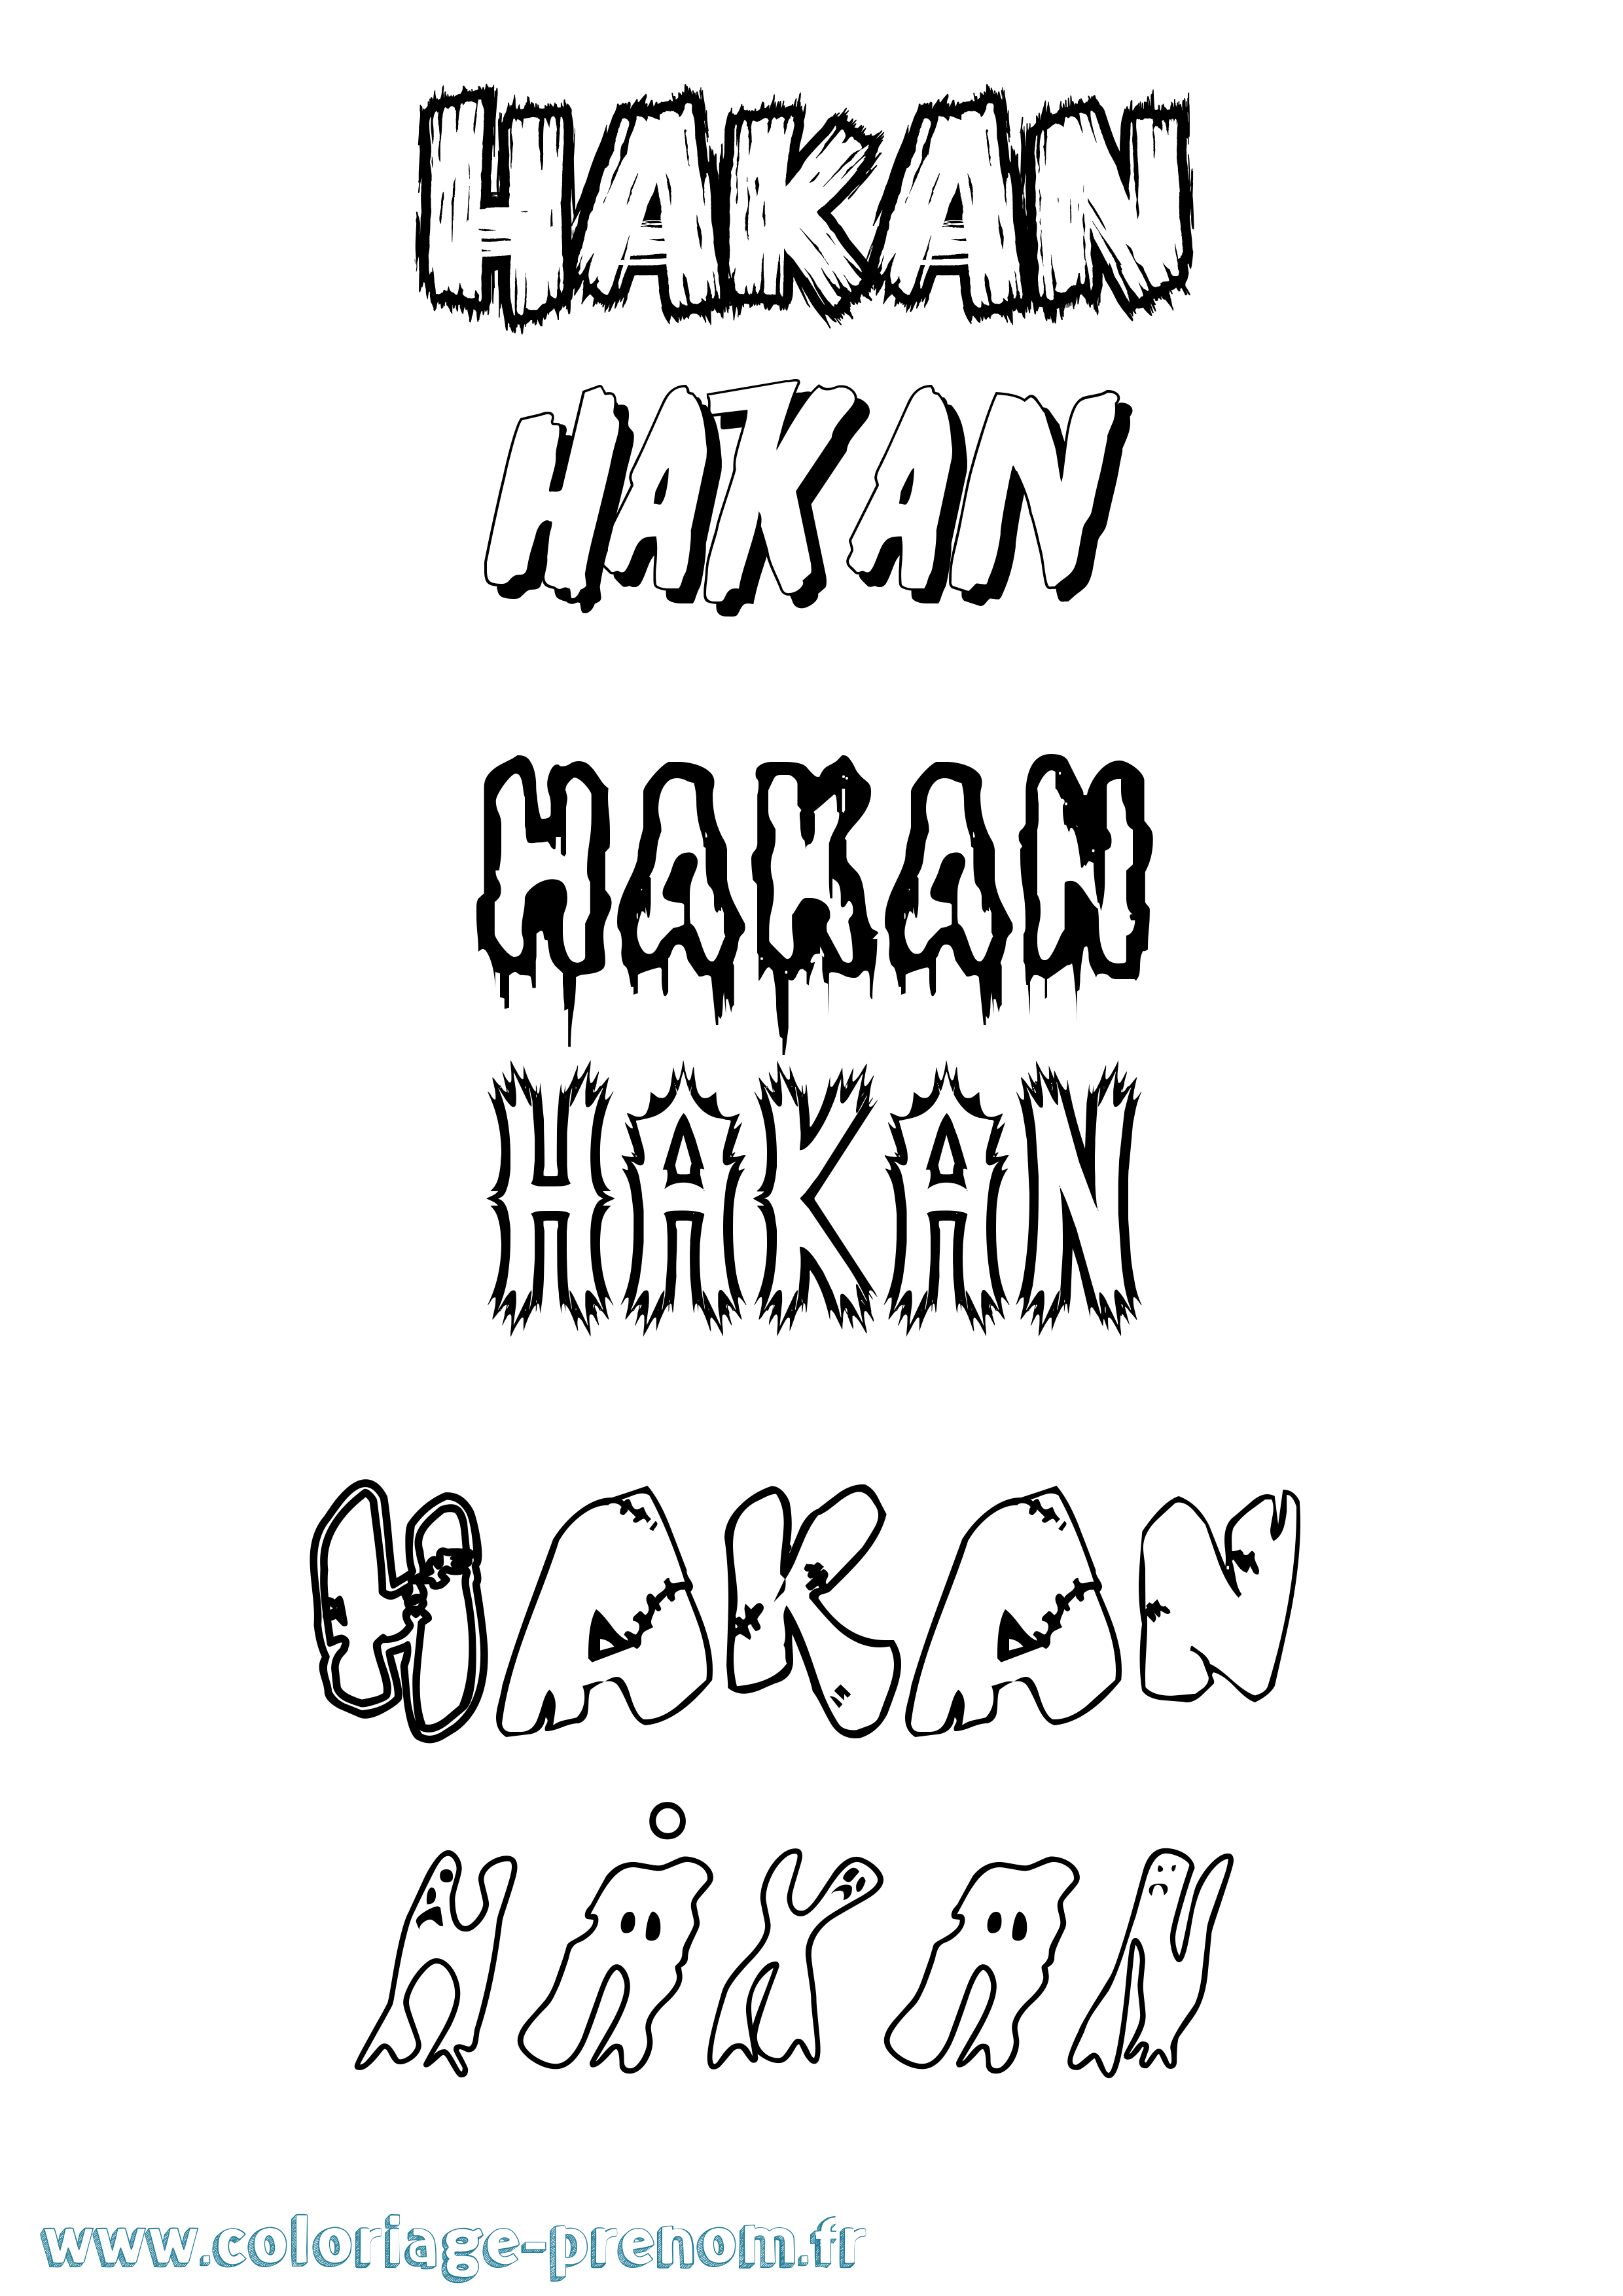 Coloriage prénom Håkan Frisson